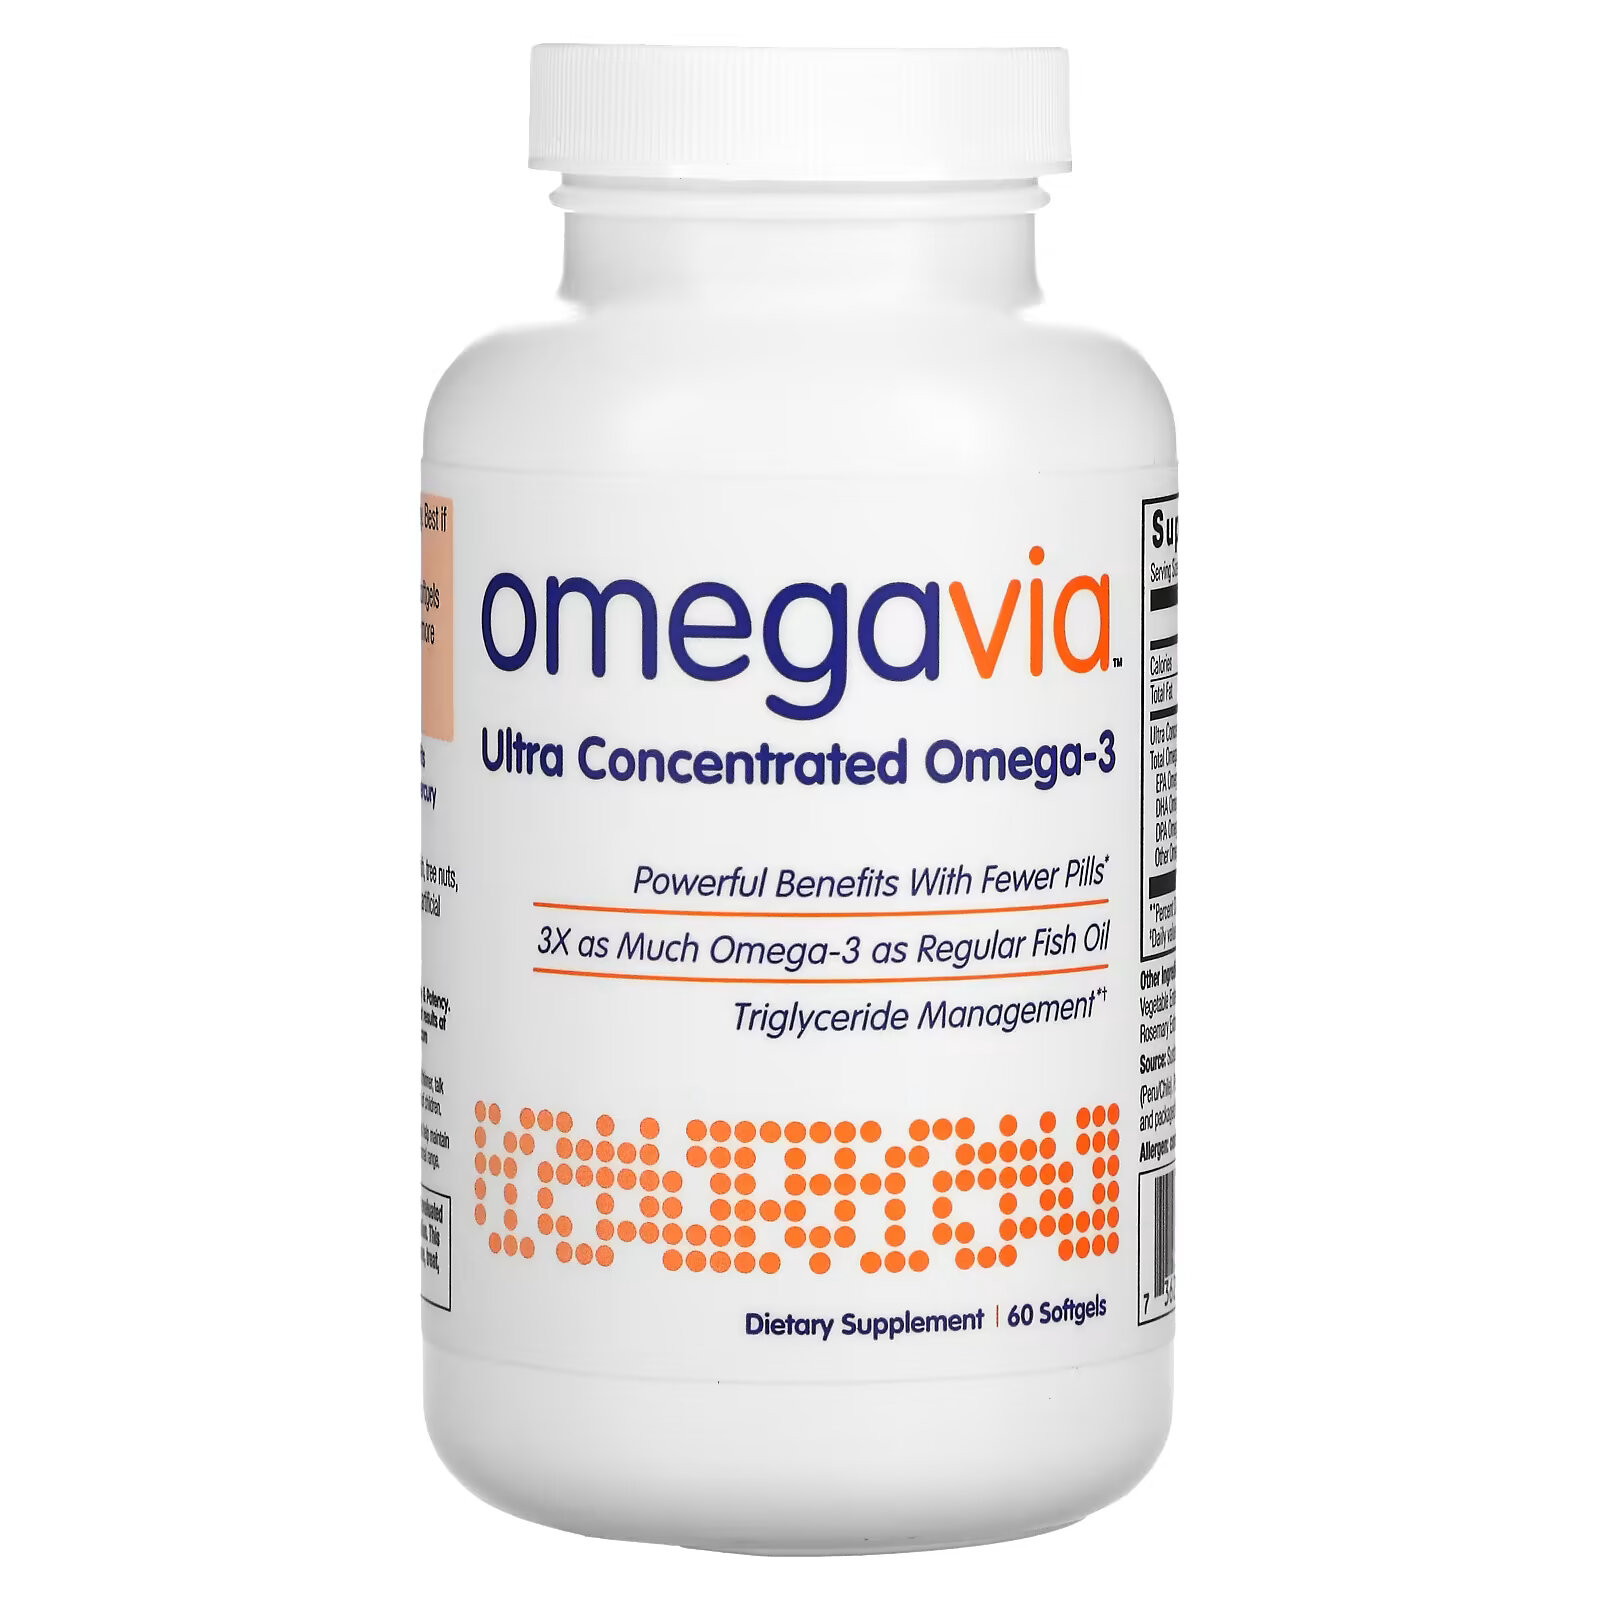 renew life critical omega ультраконцентрат омега кислот натуральный вкус апельсина 60 мягких таблеток покрытых кишечнорастворимой оболочкой OmegaVia, ультраконцентрат омега-3, 60 мягких таблеток